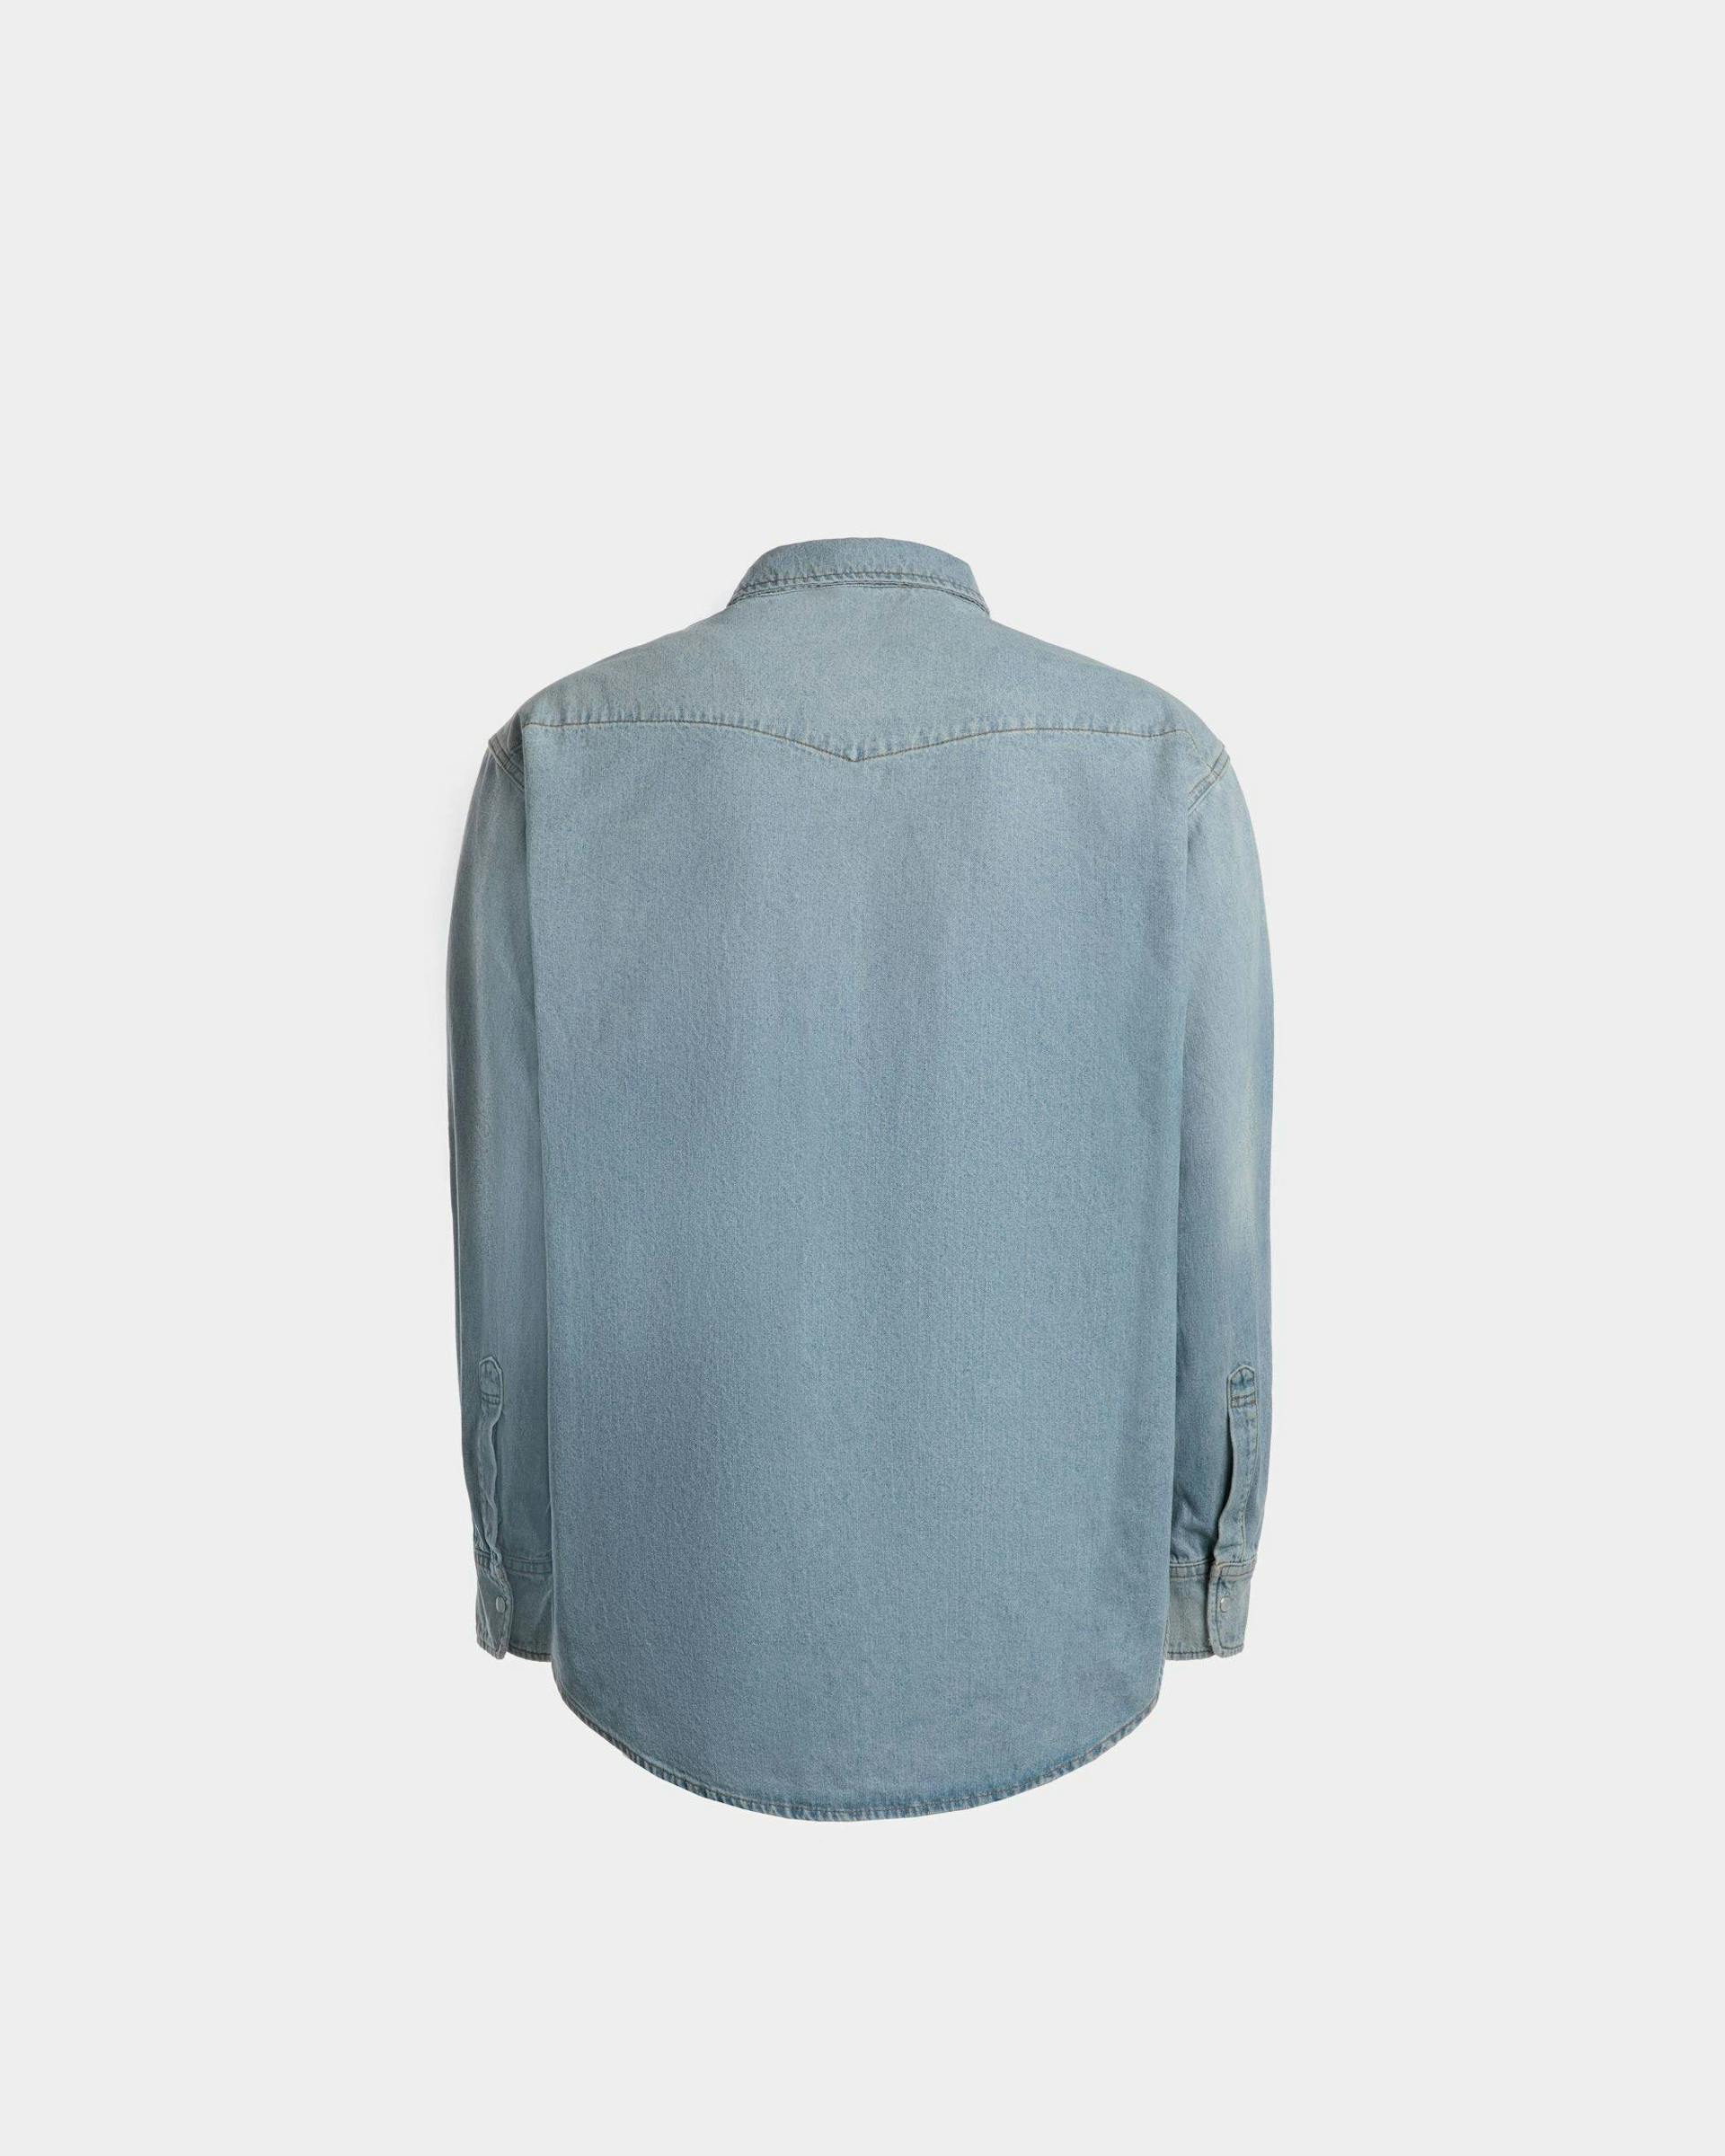 Denim Western Shirt | Men's Shirt | Light Blue Chambray Cotton | Bally